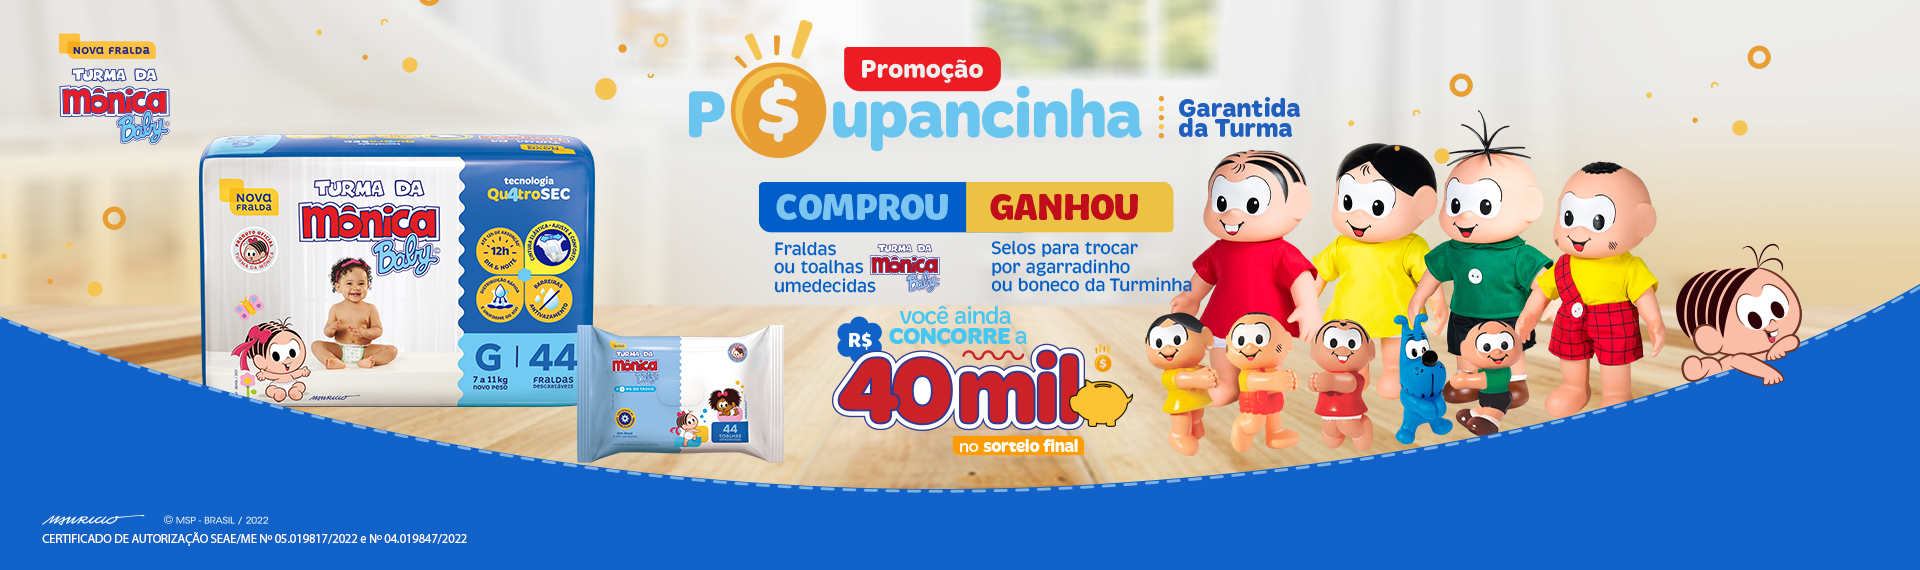 Fraldas Turma da Mônica Baby lança Promoção que entregará brindes e sorteará R$40 mil para garantir a “poupancinha” do bebê